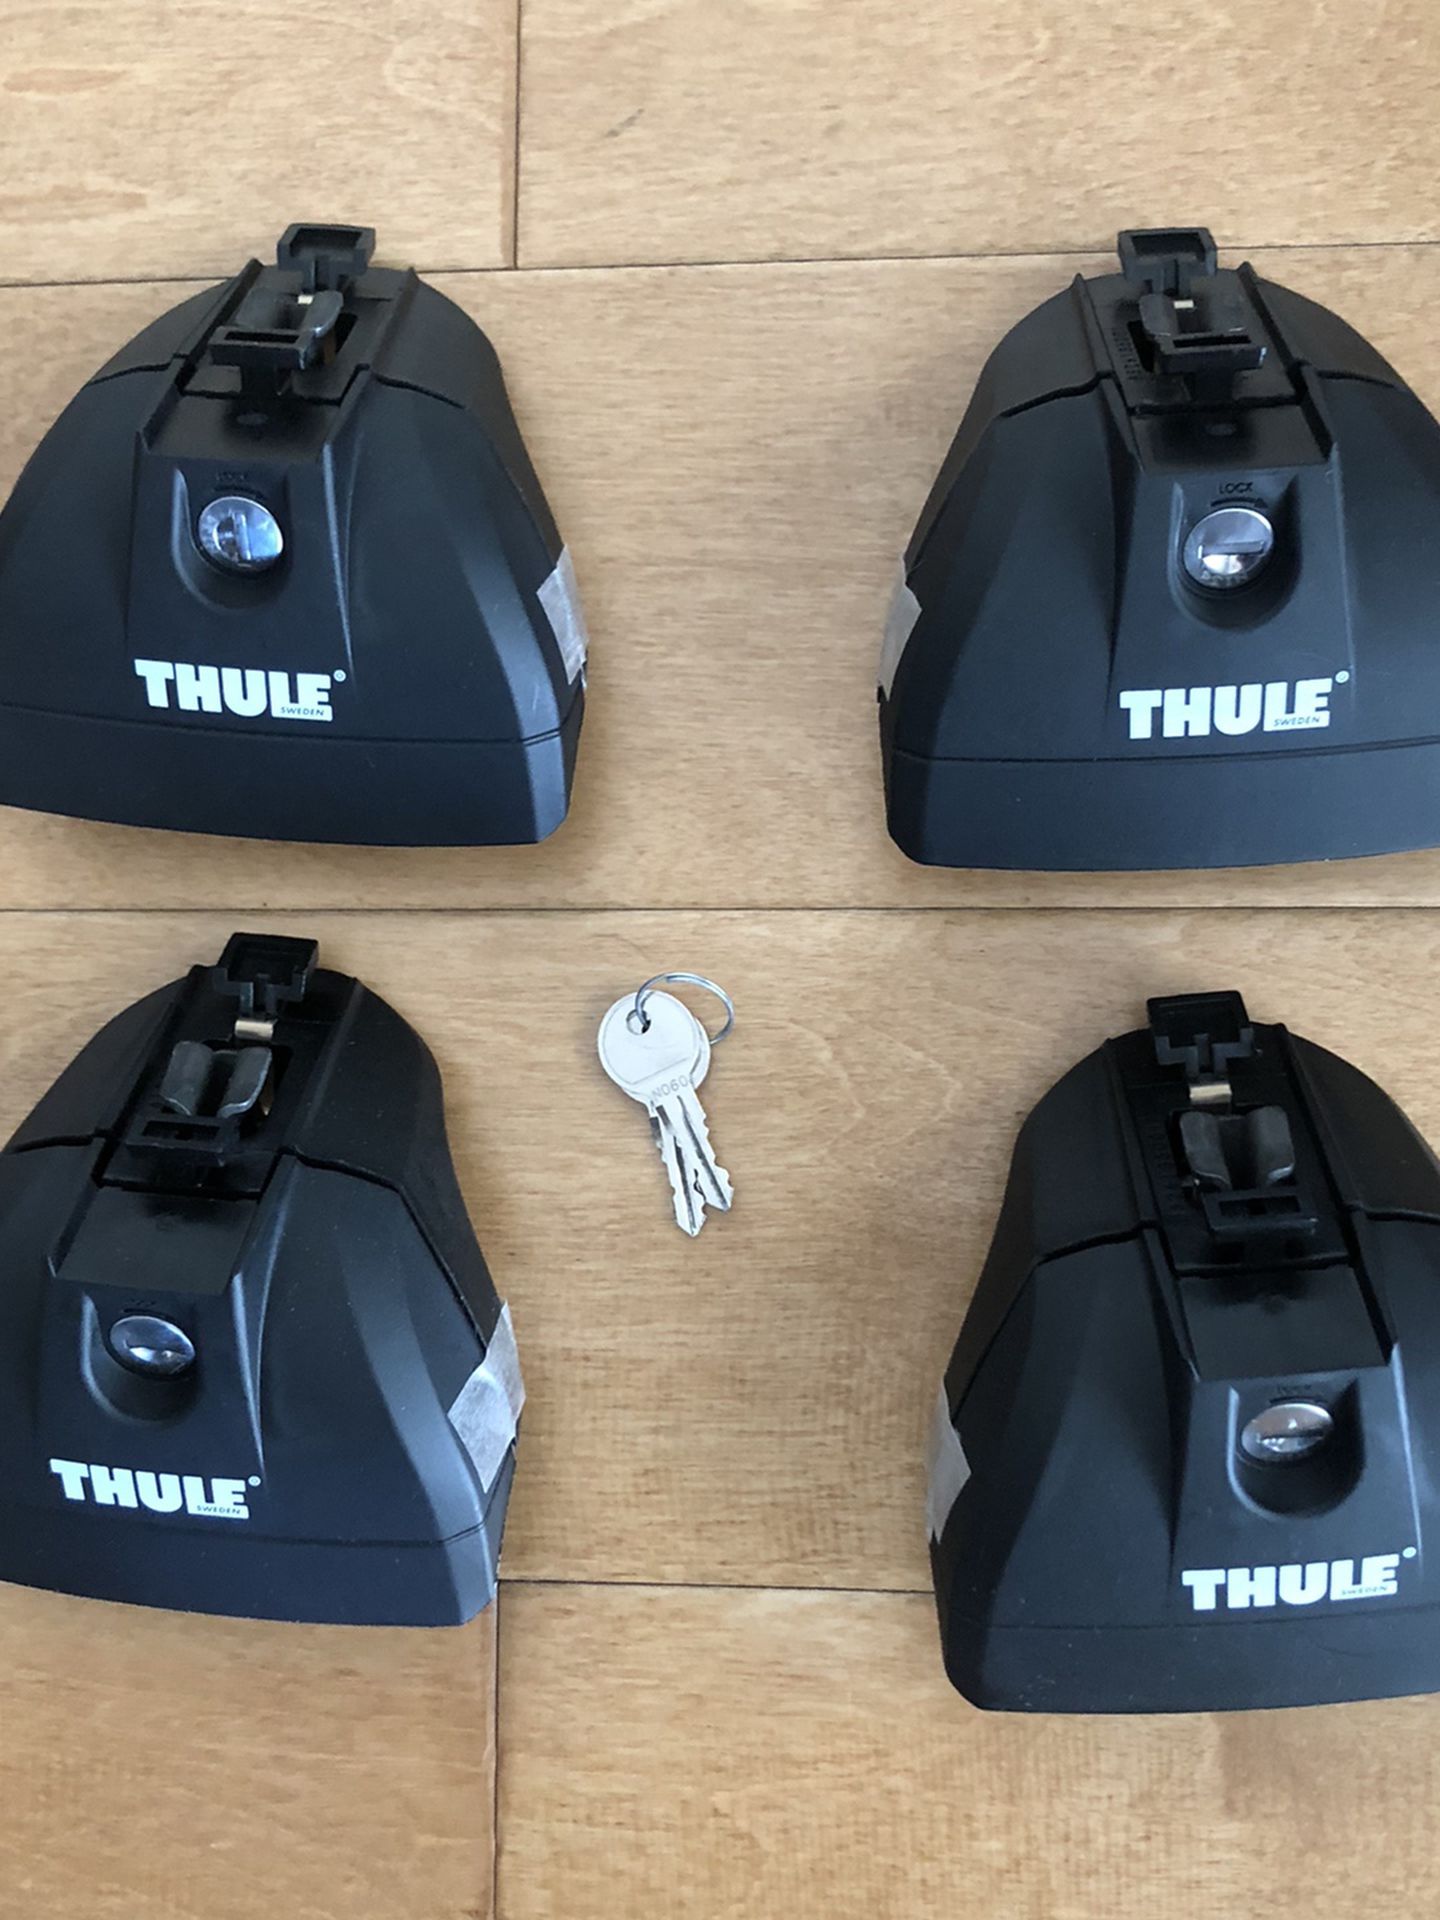 Thule 460R Foot Packs With Locks